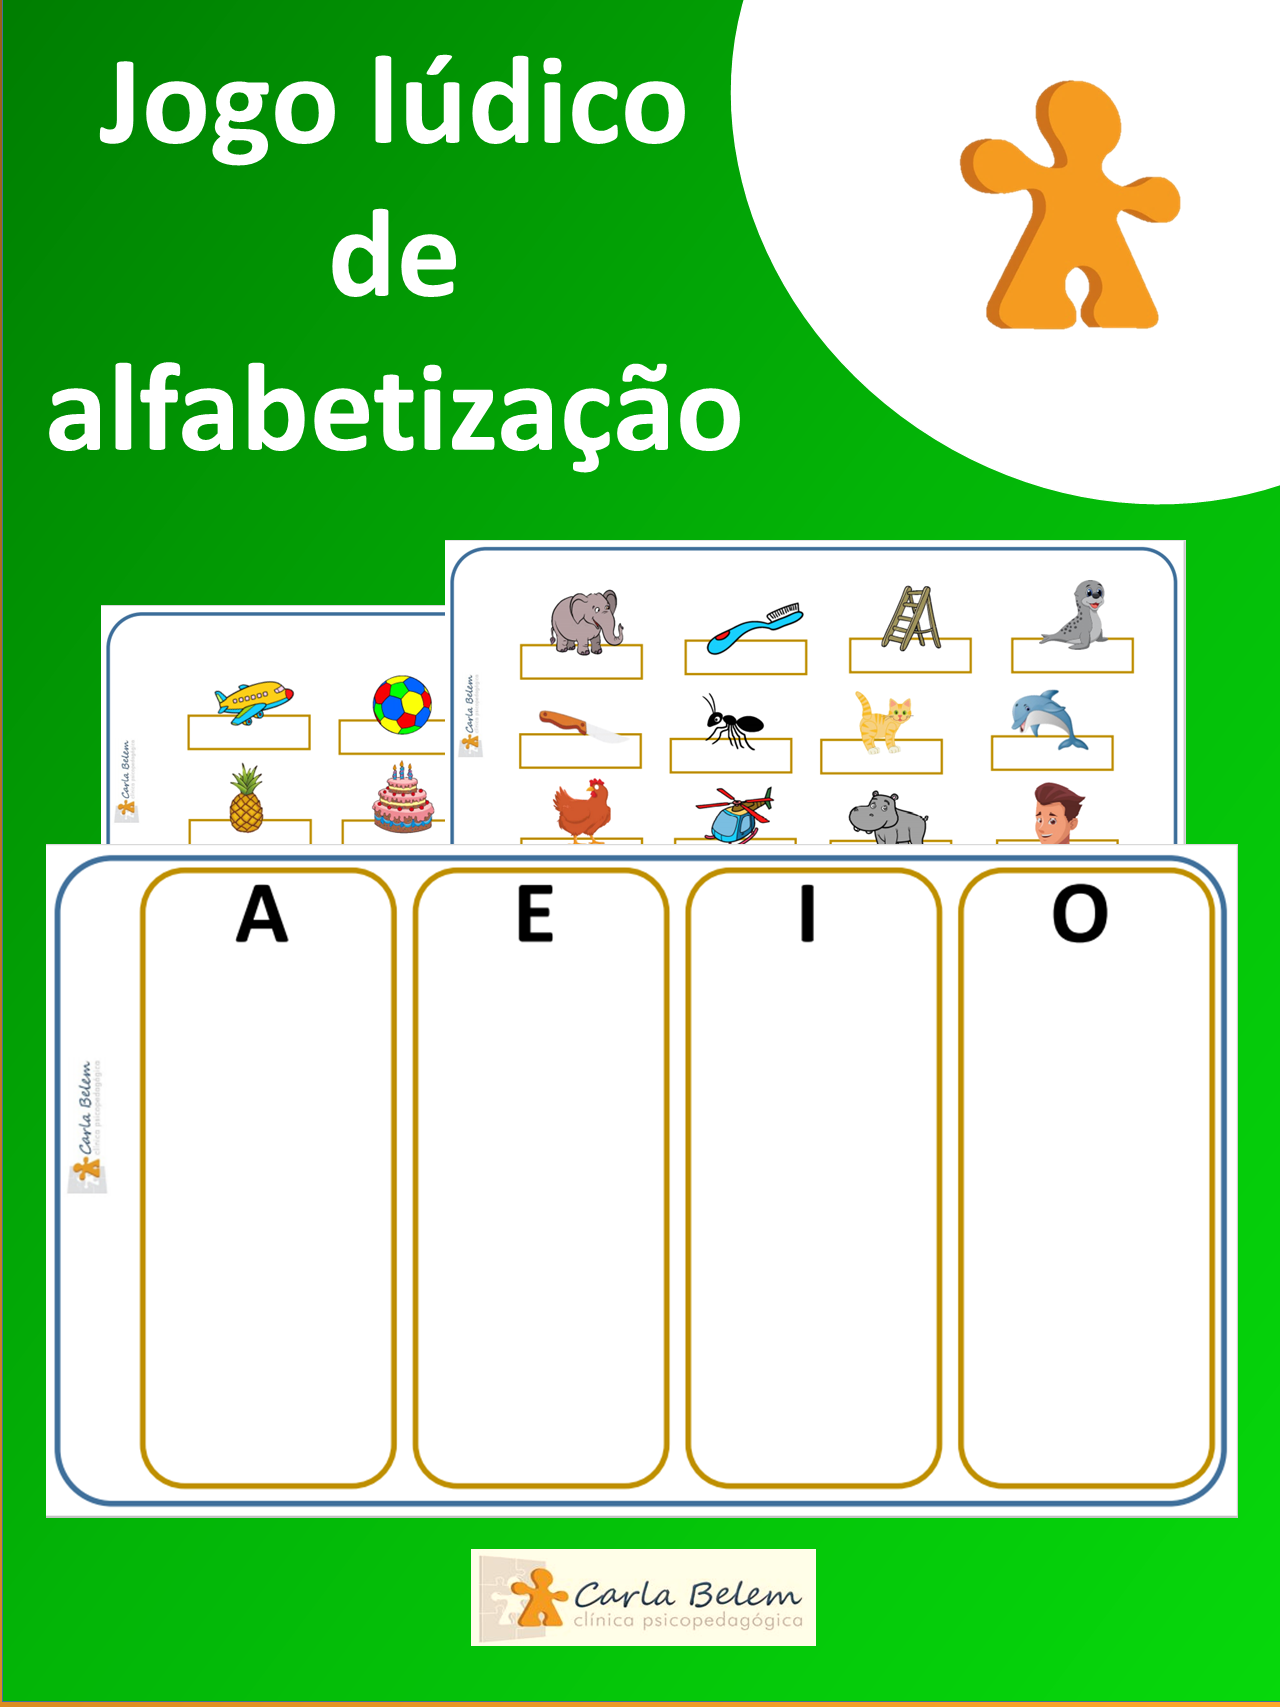 Jogos na alfabetização: brincar para escrever – CartaCapital